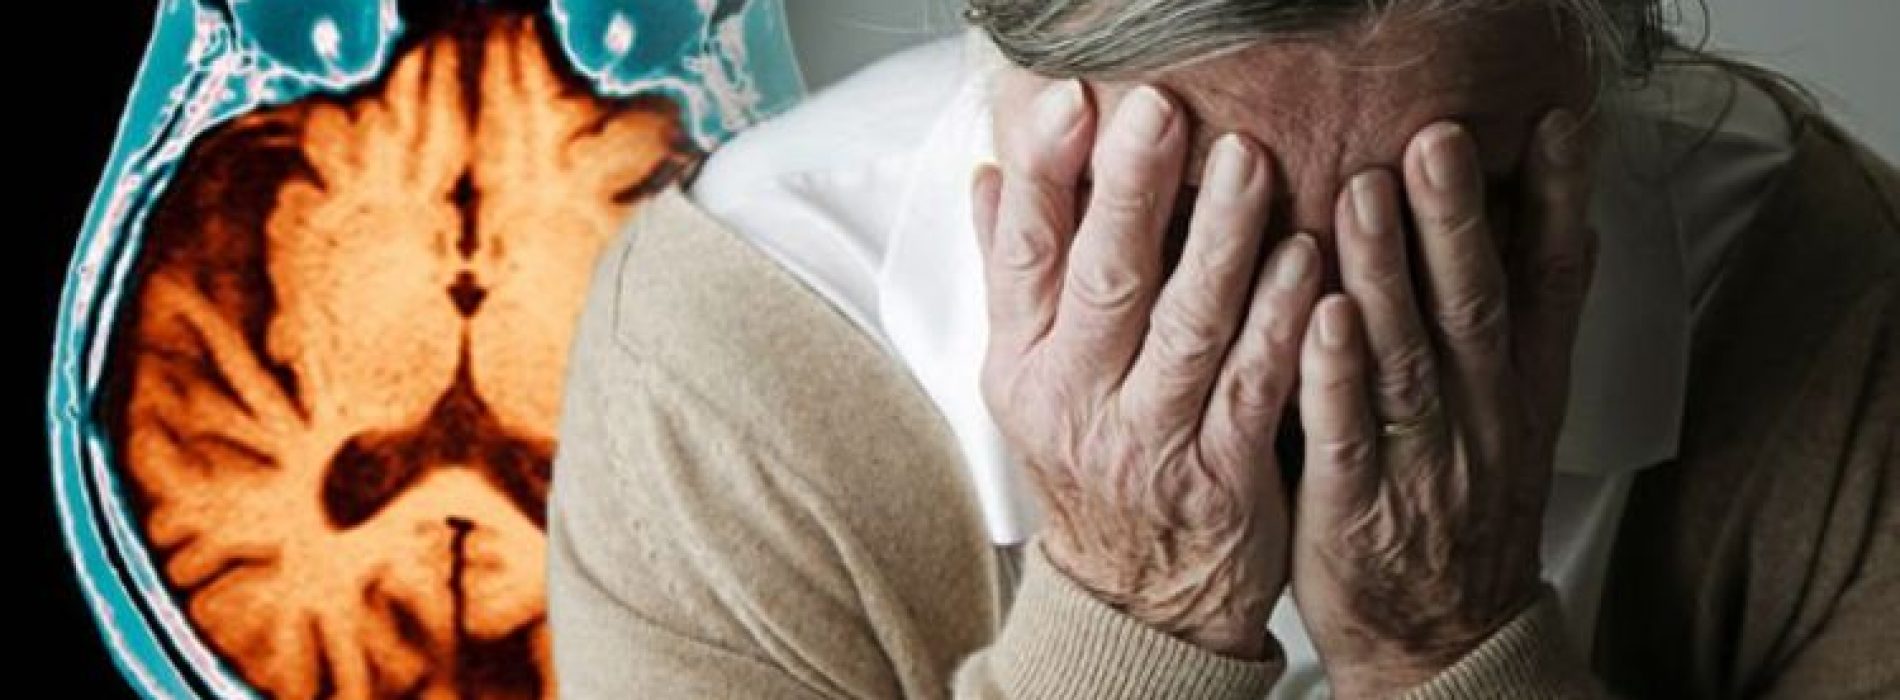 Als u niet genoeg slaap krijgt, versnelt u hersenschade in verband met de ziekte van Alzheimer, waarschuwen onderzoekers